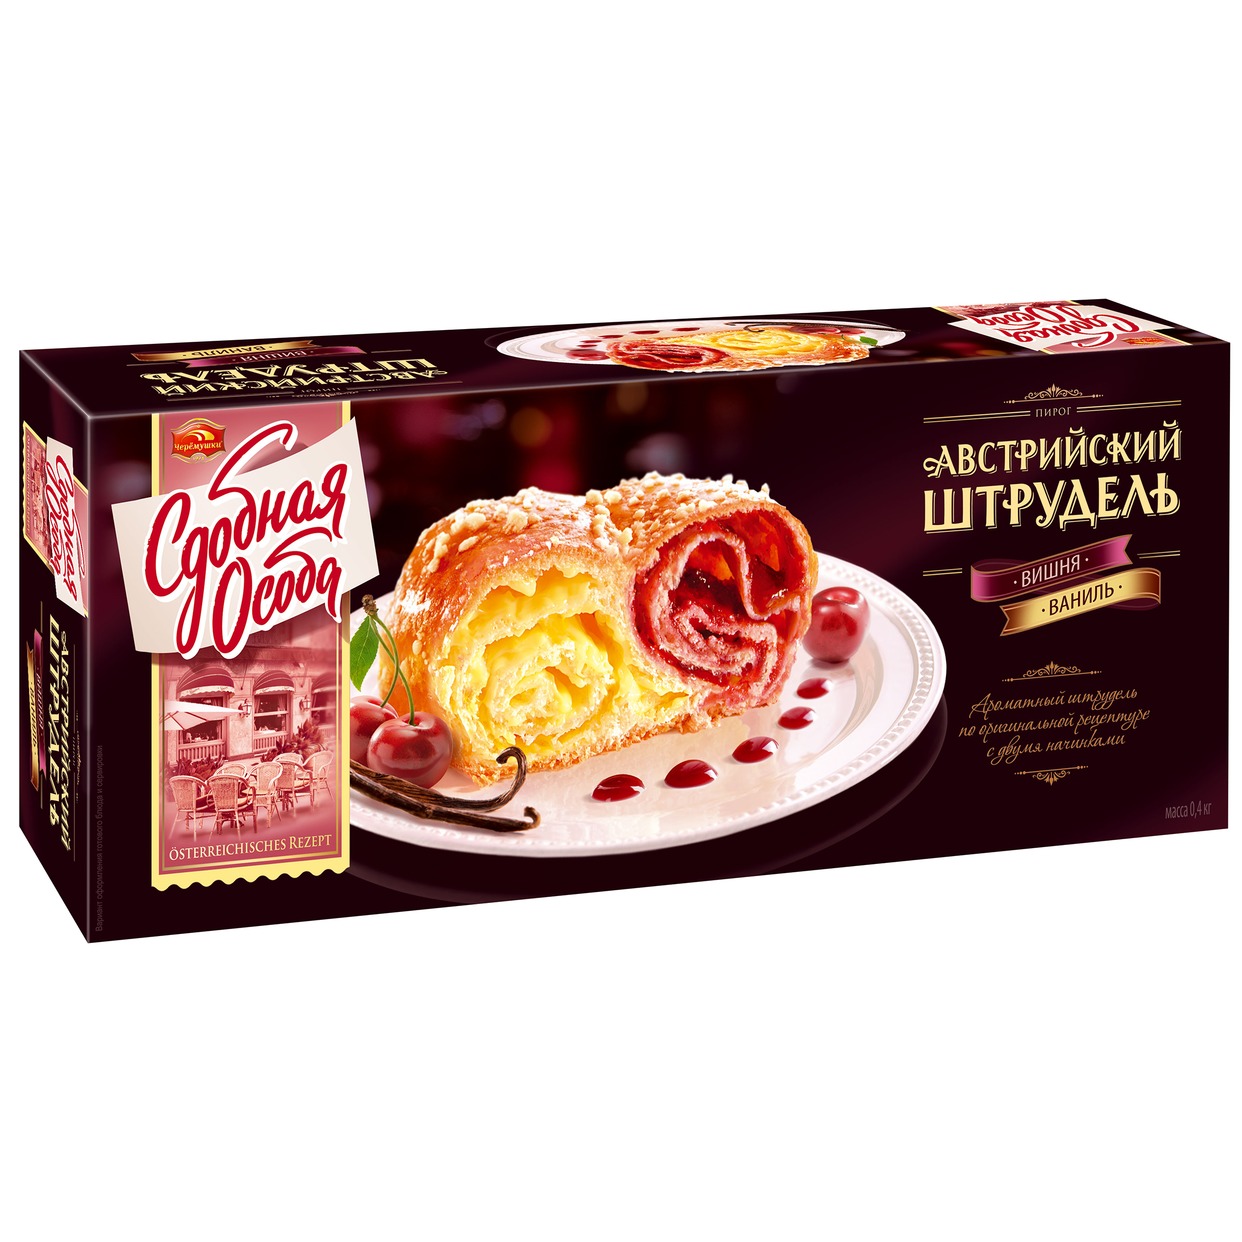 Пирог "Сдобная Особа" Австрийский Штрудель вишнево-ванильный 400г